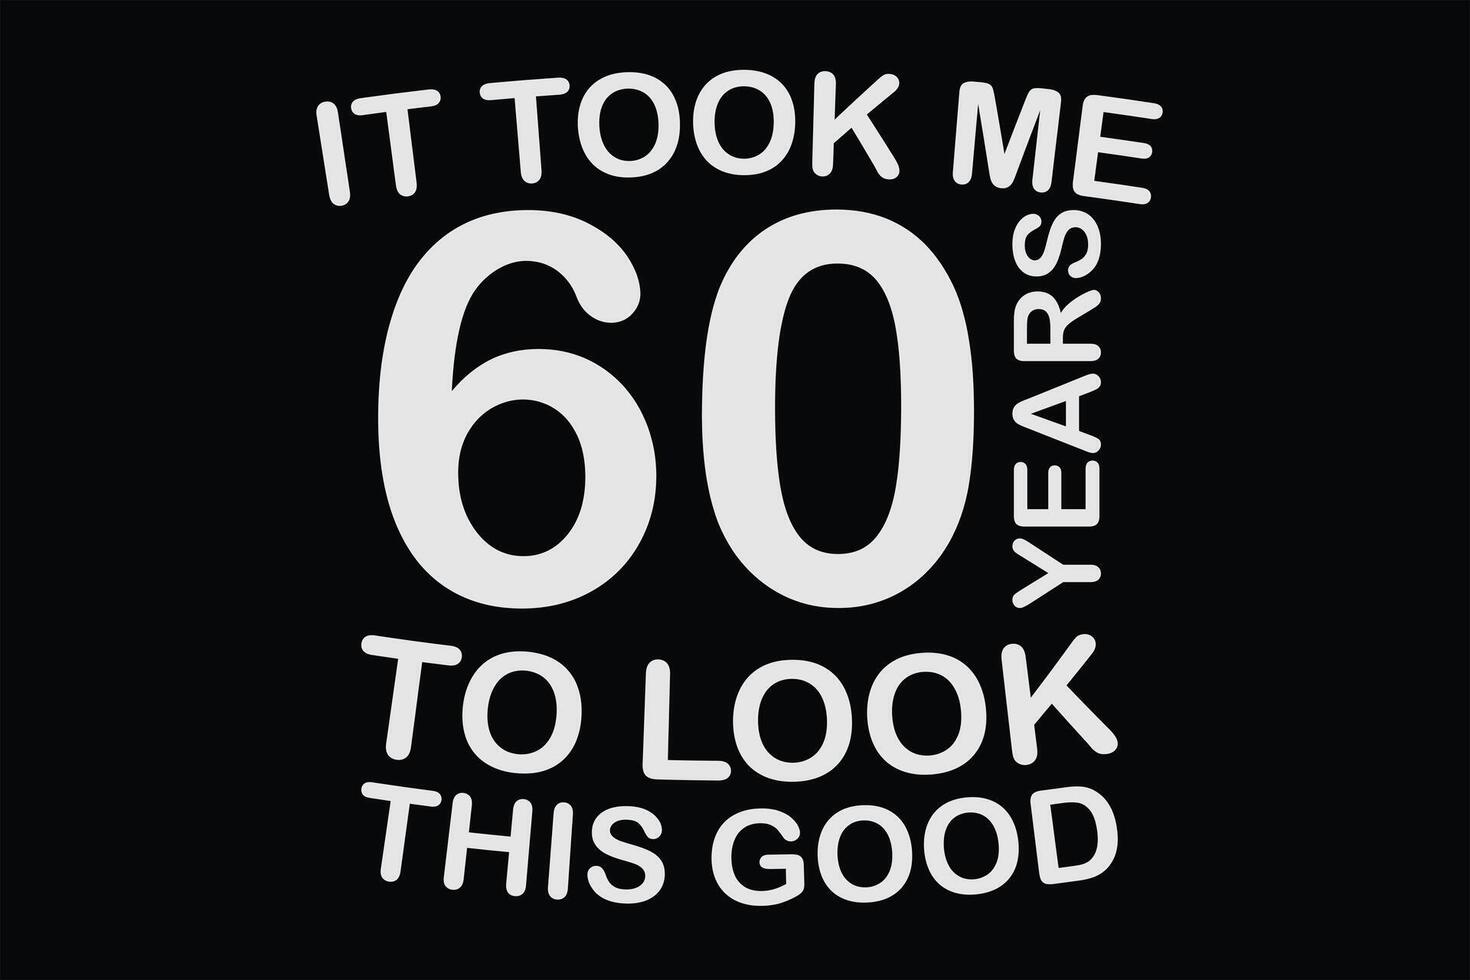 eso tomó yo 60 60 años a Mira esta bueno gracioso 60 cumpleaños camiseta diseño vector